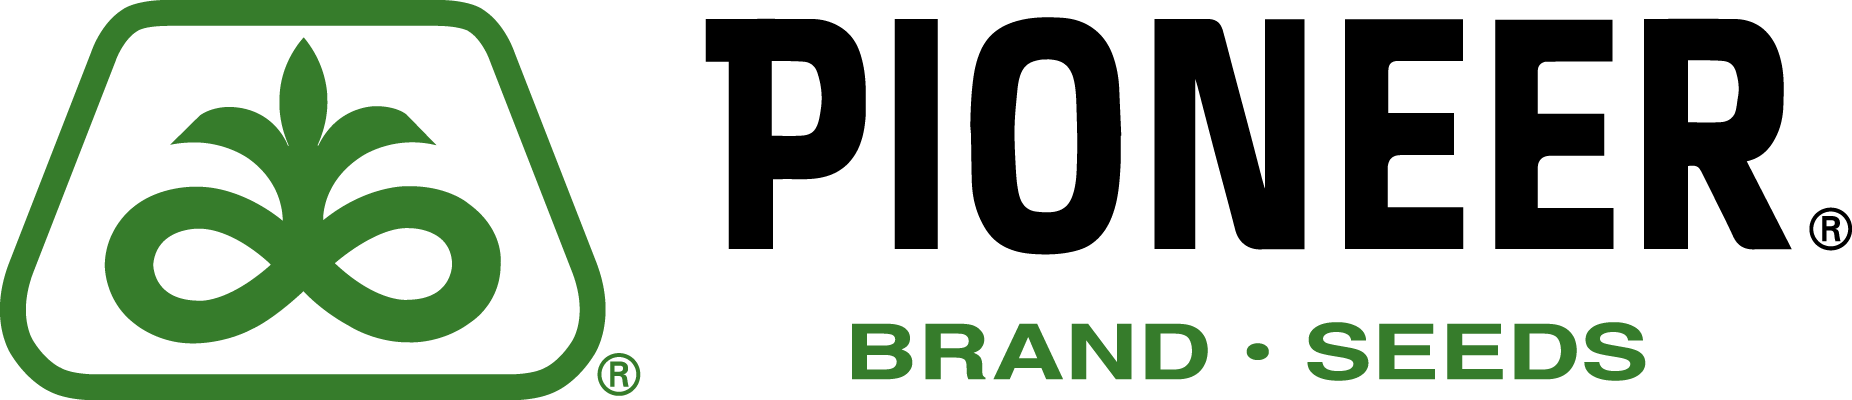 pioneer brand seeds landscape logo (2).png